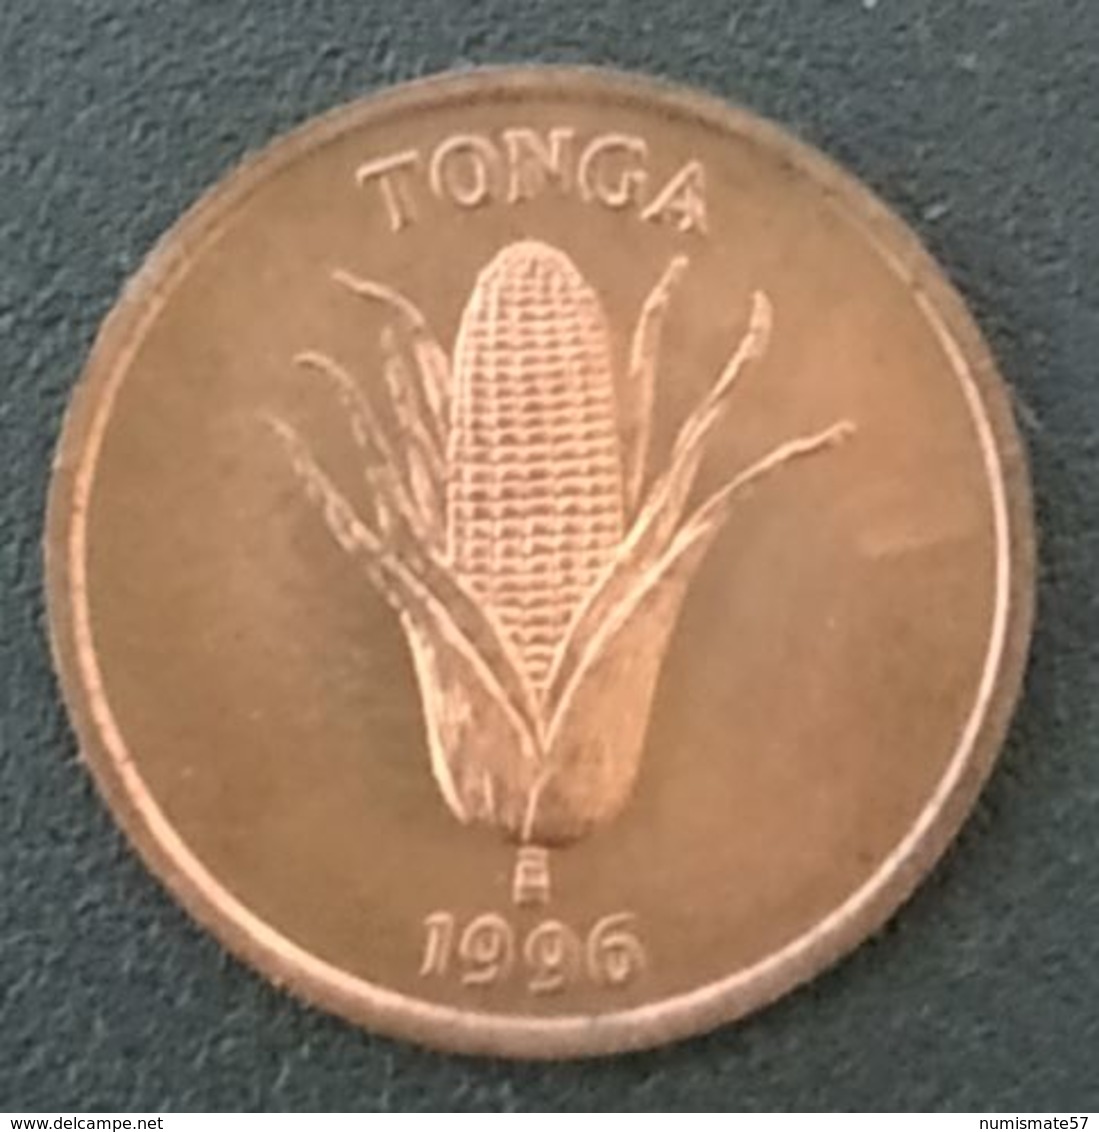 TONGA - 1 SENITI 1996 - FAO - KM 66 - Tonga